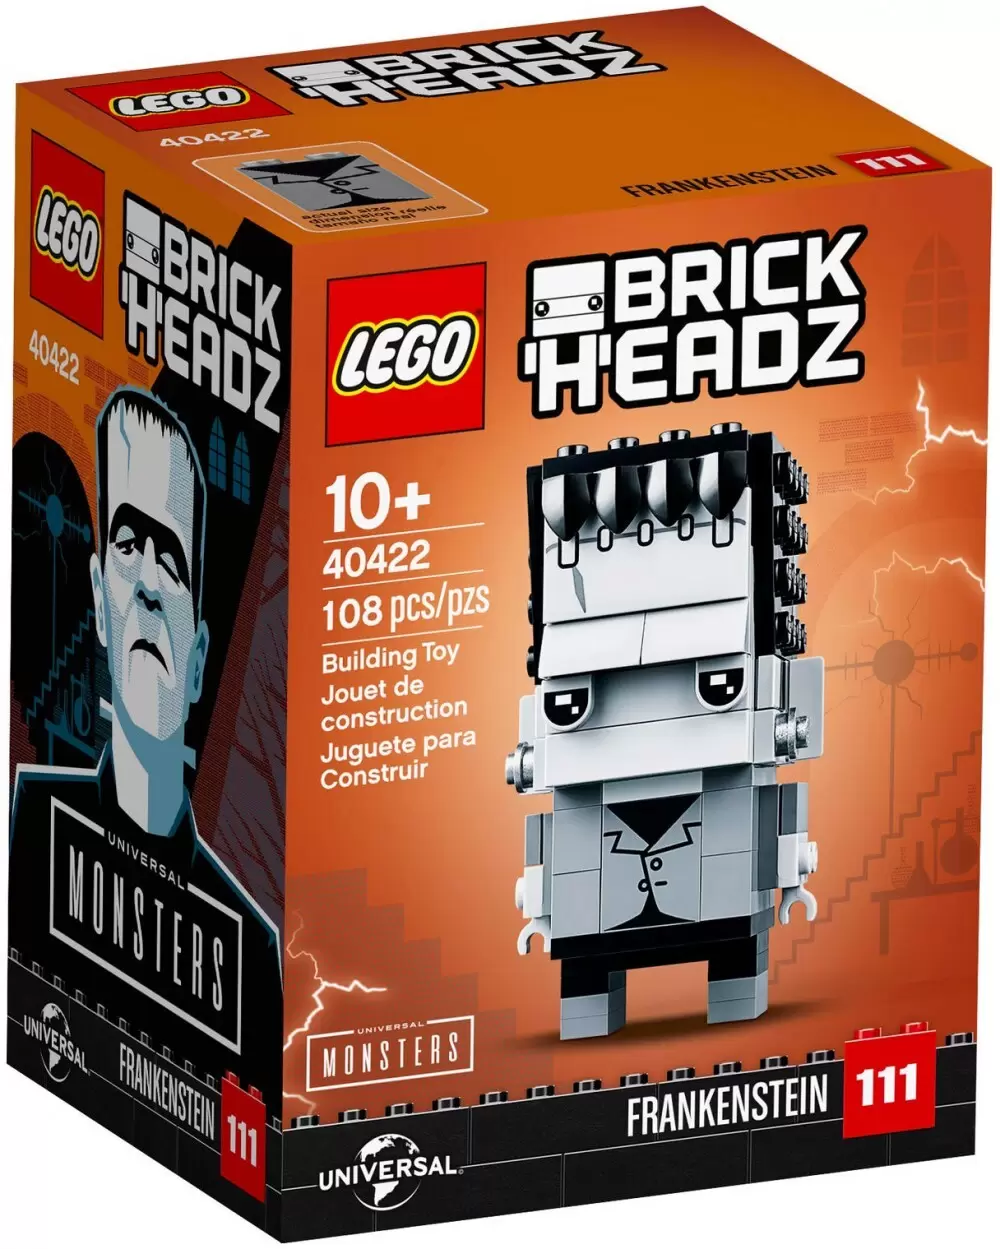 LEGO BrickHeadz - 111 - Frankenstein (Universal Monsters)